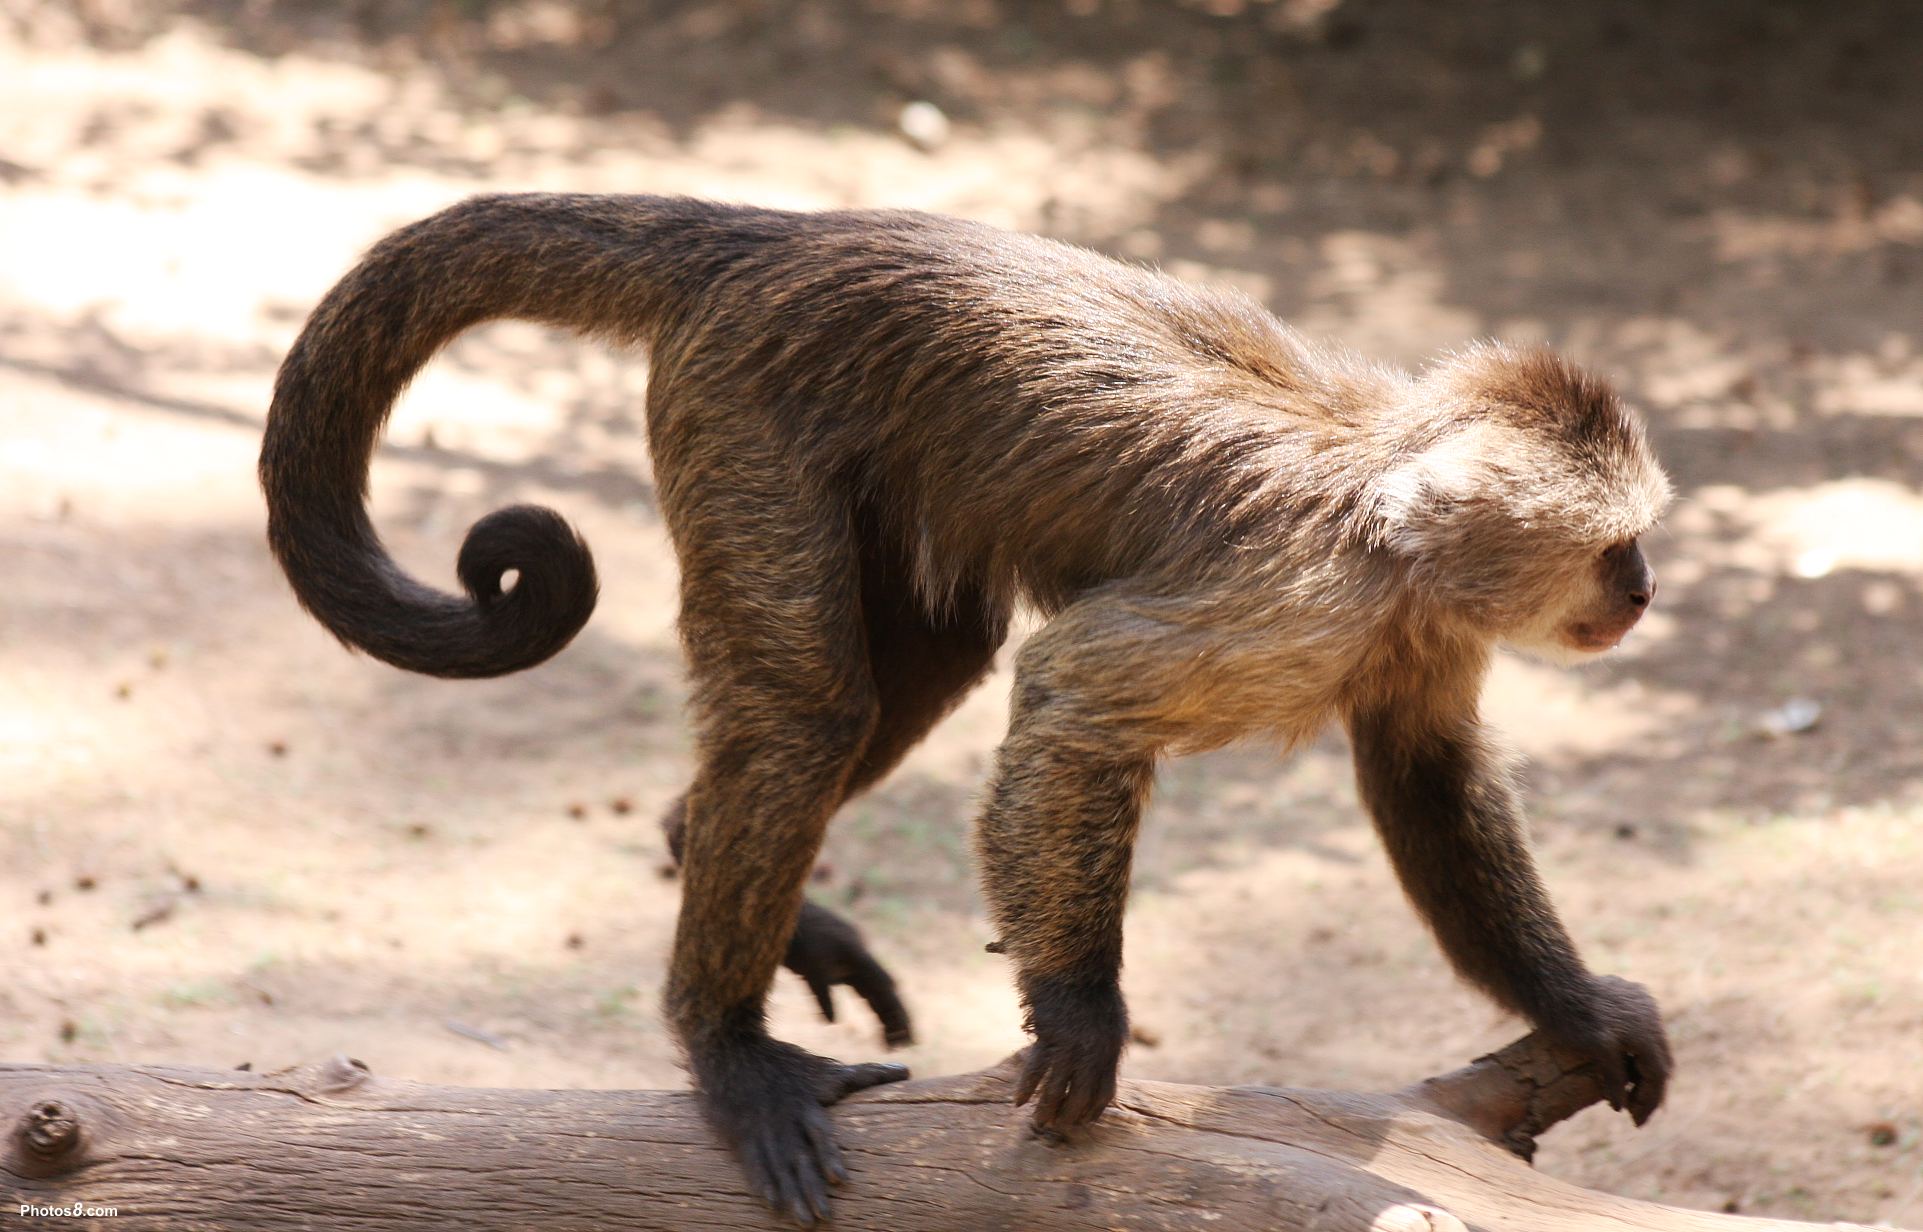 monkey-tail-facial-hair-wiki-fandom-powered-by-wikia